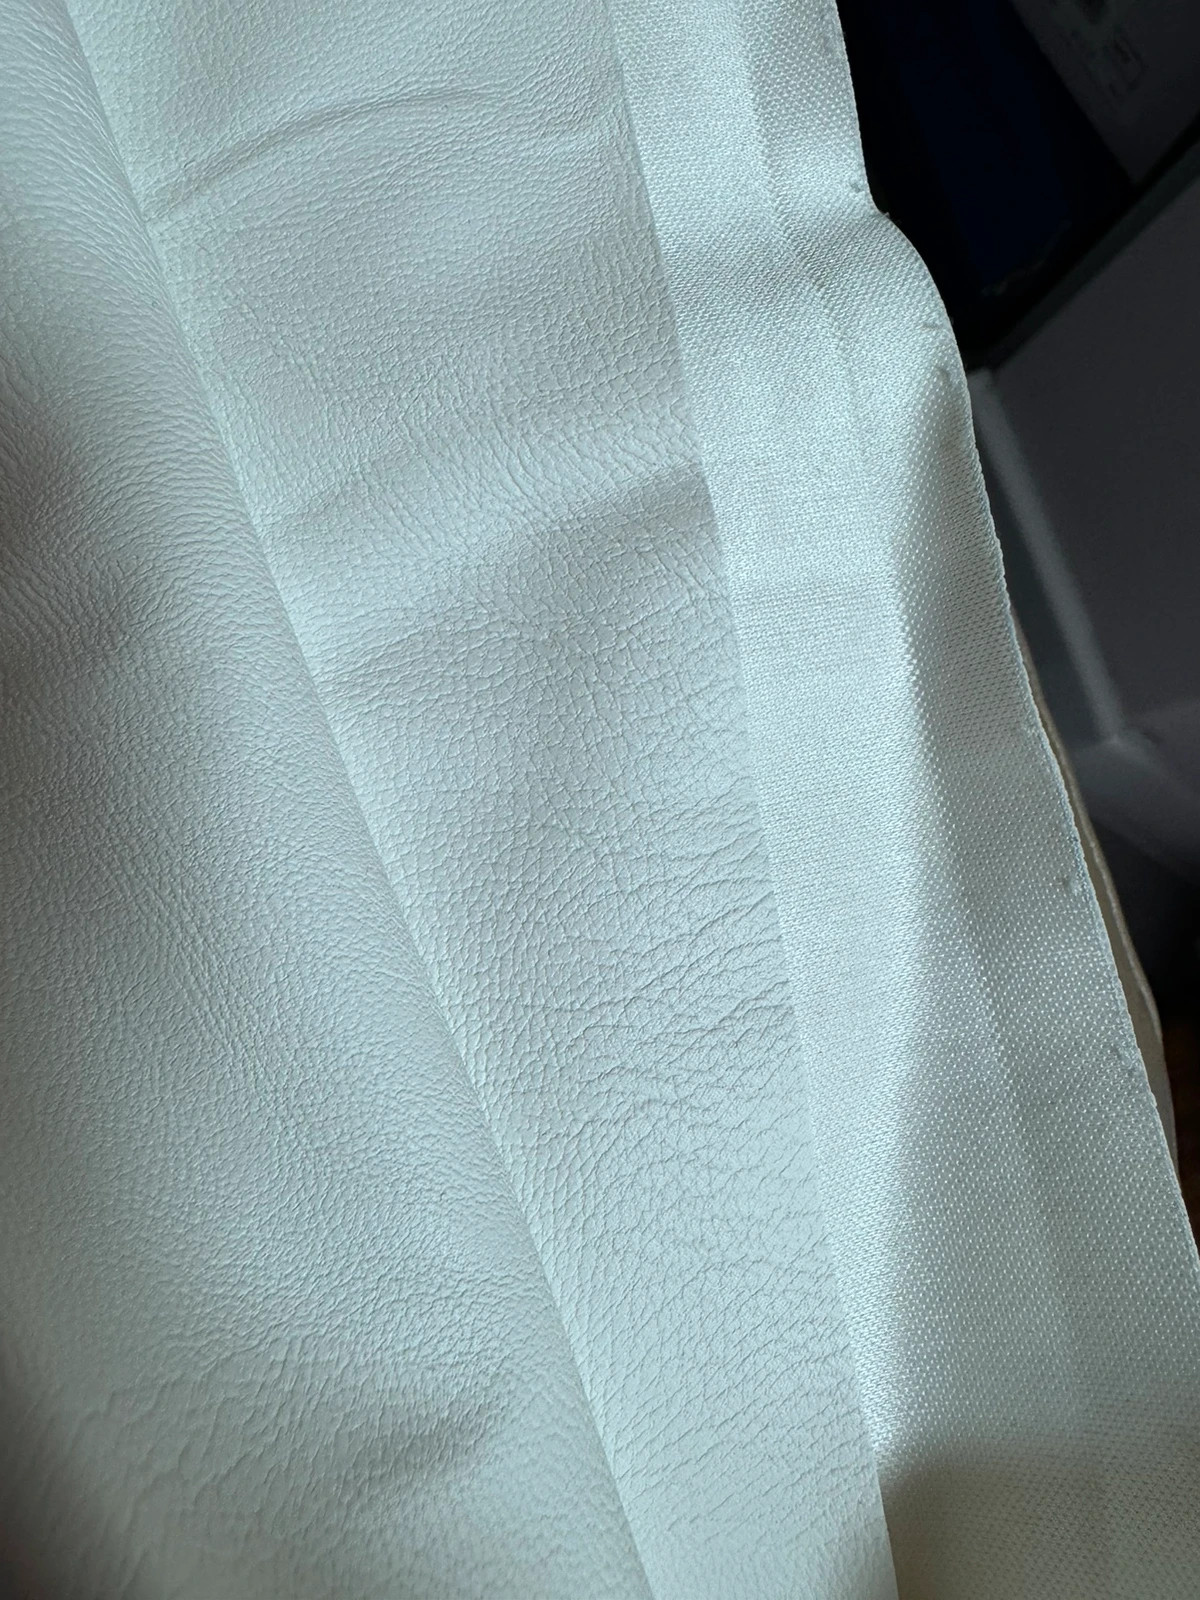 NarzutaSkóra ekologiczna materiał tkanina biała